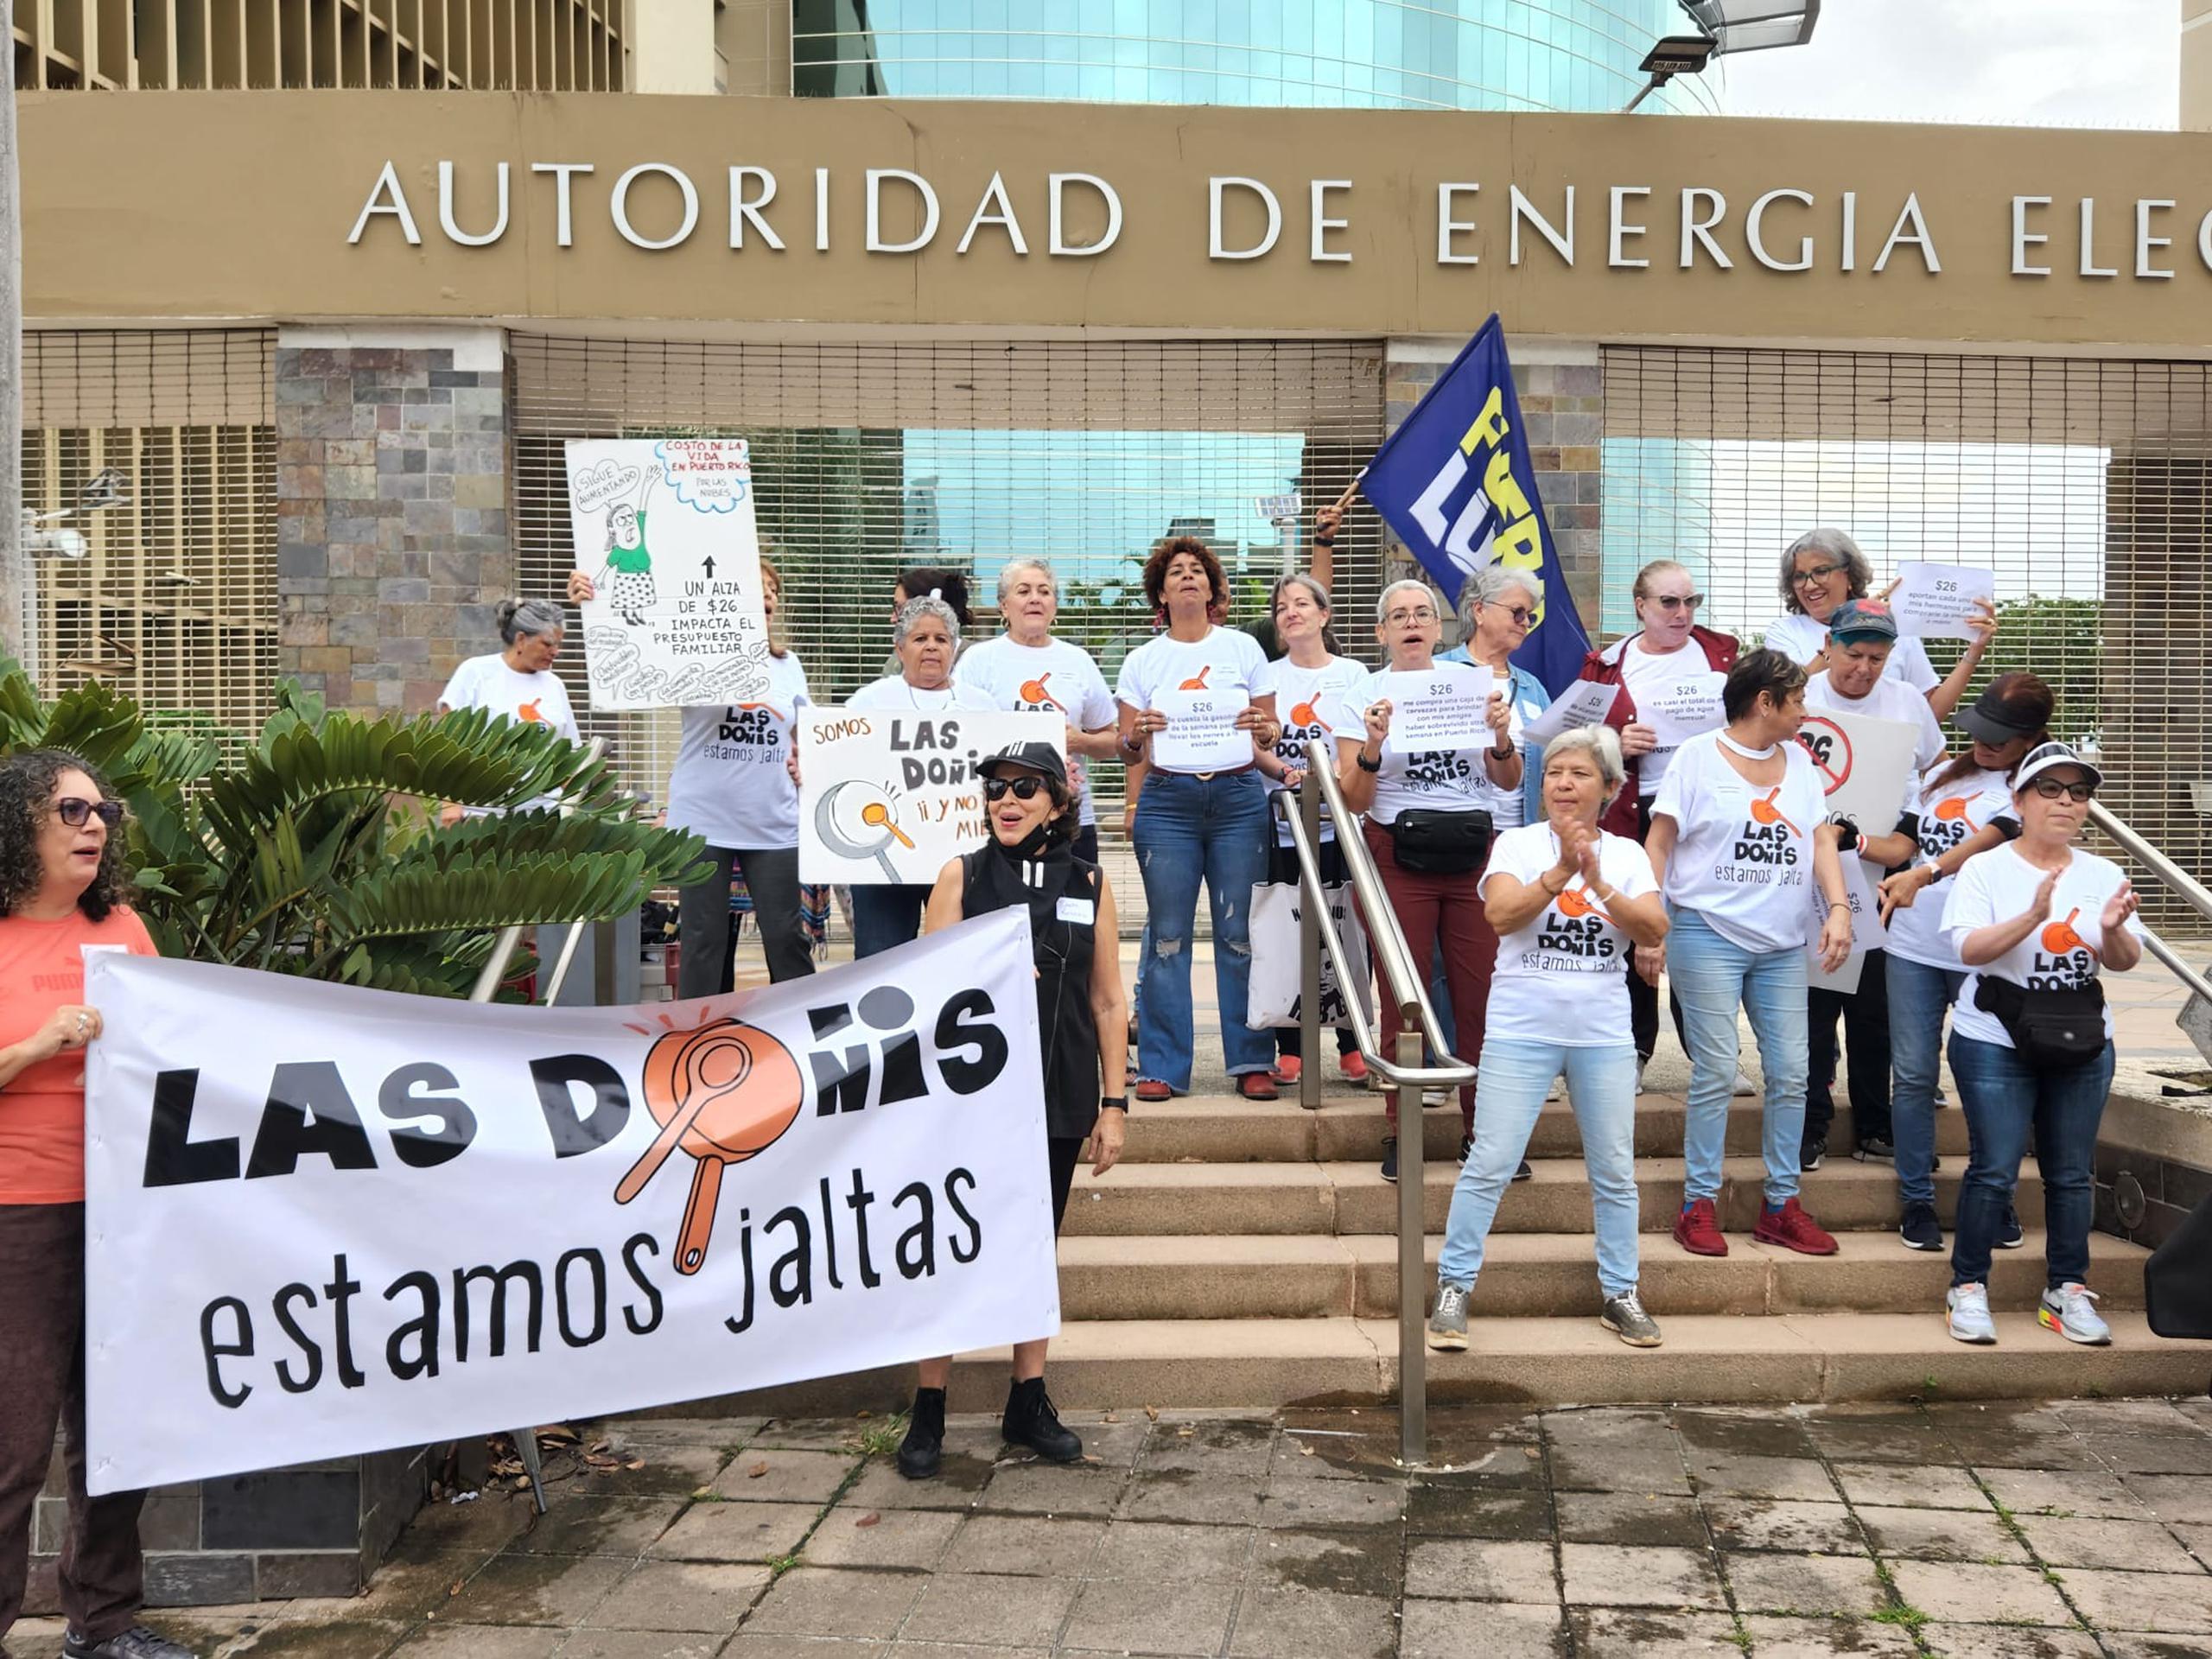 Las Doñis "jaltas" consideran seguir sus protestas en contra del aumento propuesto a la tarifa de la luz para pagar la deuda de la AEE en distintas agencias de gobierno.